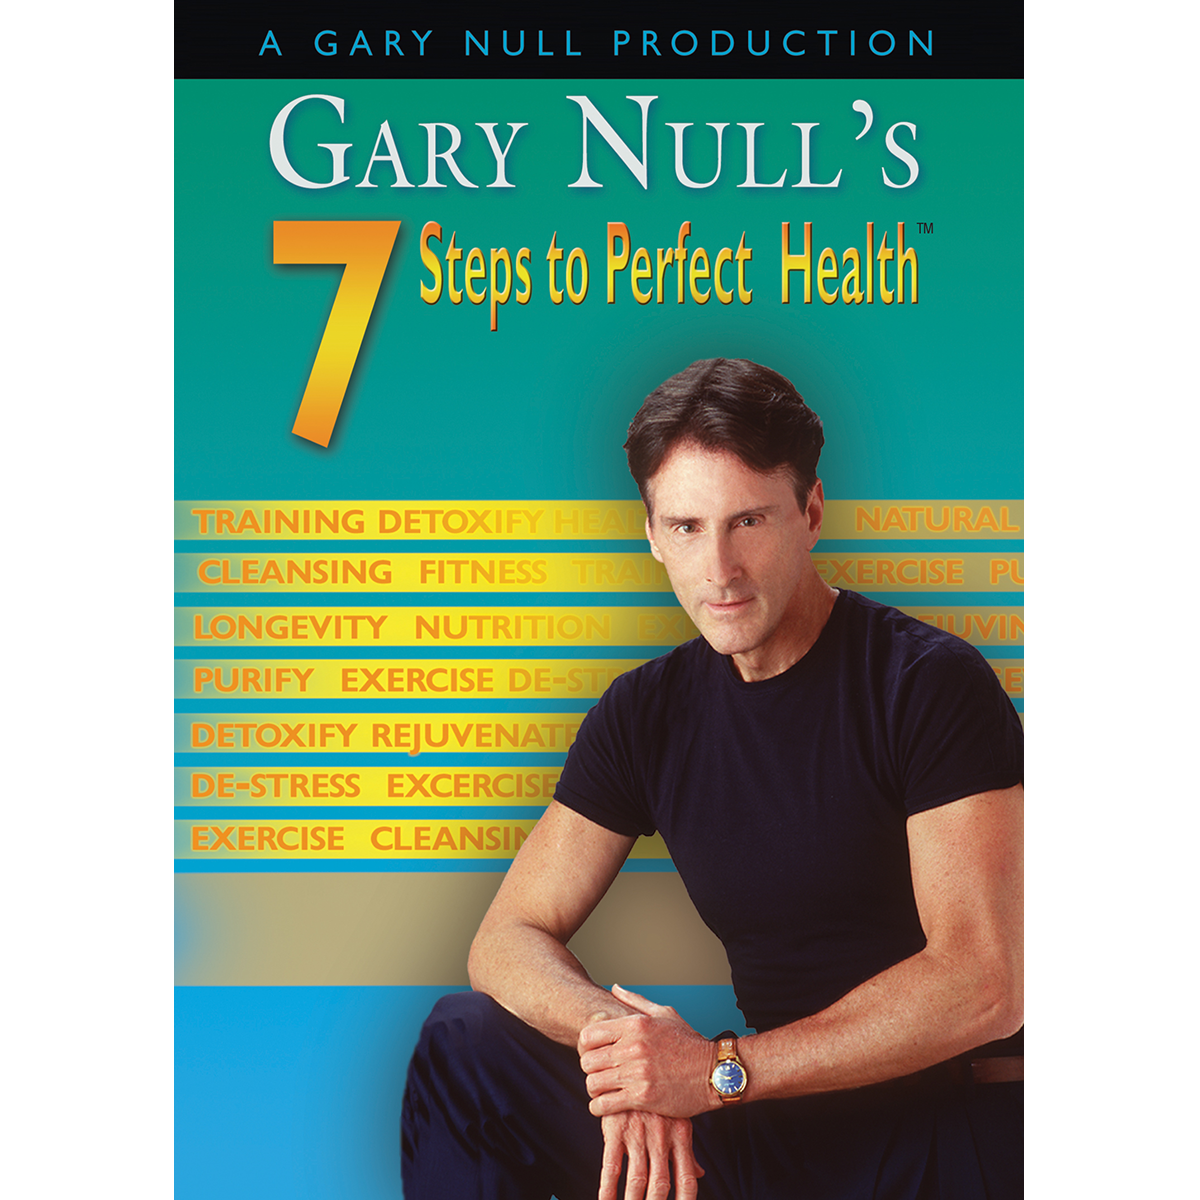 7-steps-to-perfect-health_883a0c42-1630-40a3-af11-a58a739cbb4b.png